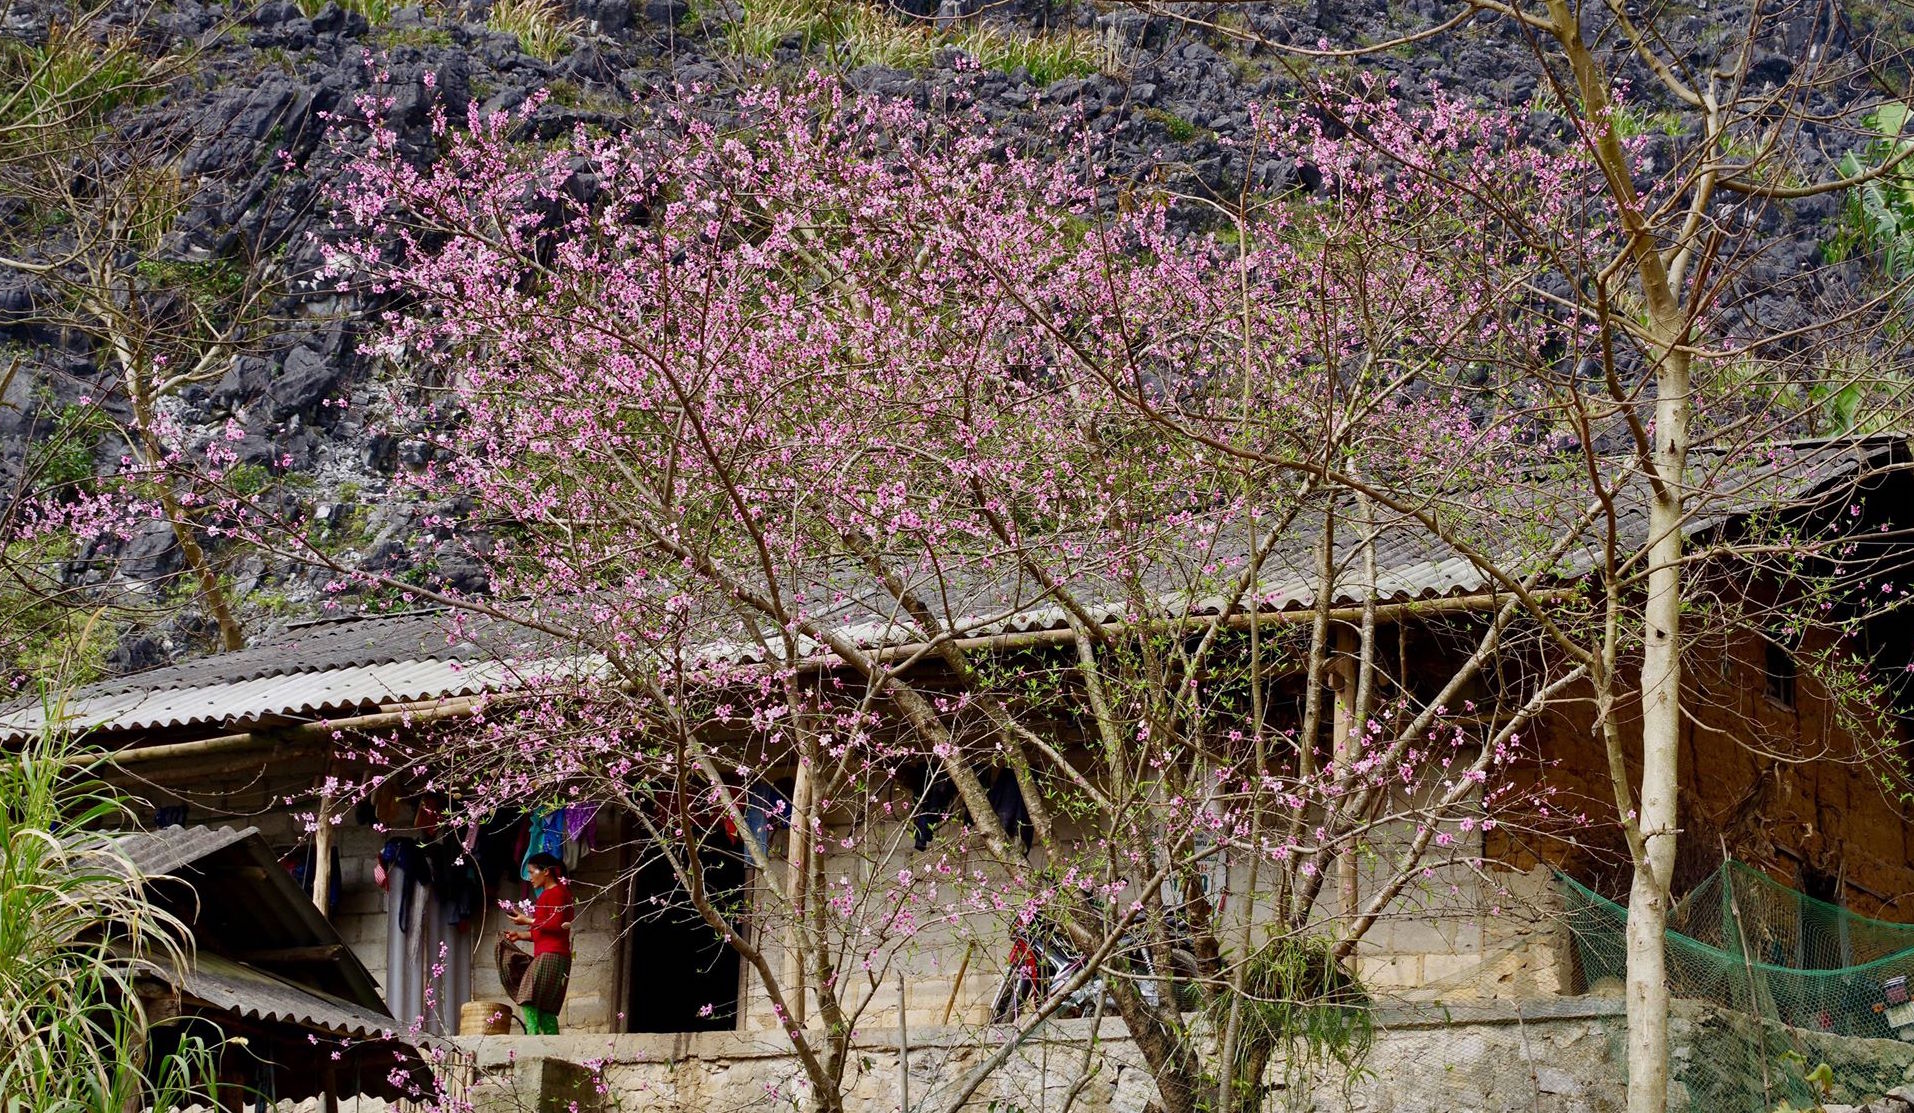 Anh Nguyễn Chí Hoàng cho biết, nếu đến Hà Giang vì hoa, bạn nên đi vào các bản, bỏ qua các điểm du lịch phổ biến. Hoa tại các bản đang nở rộ, đẹp hơn các điểm du lịch rất nhiều.